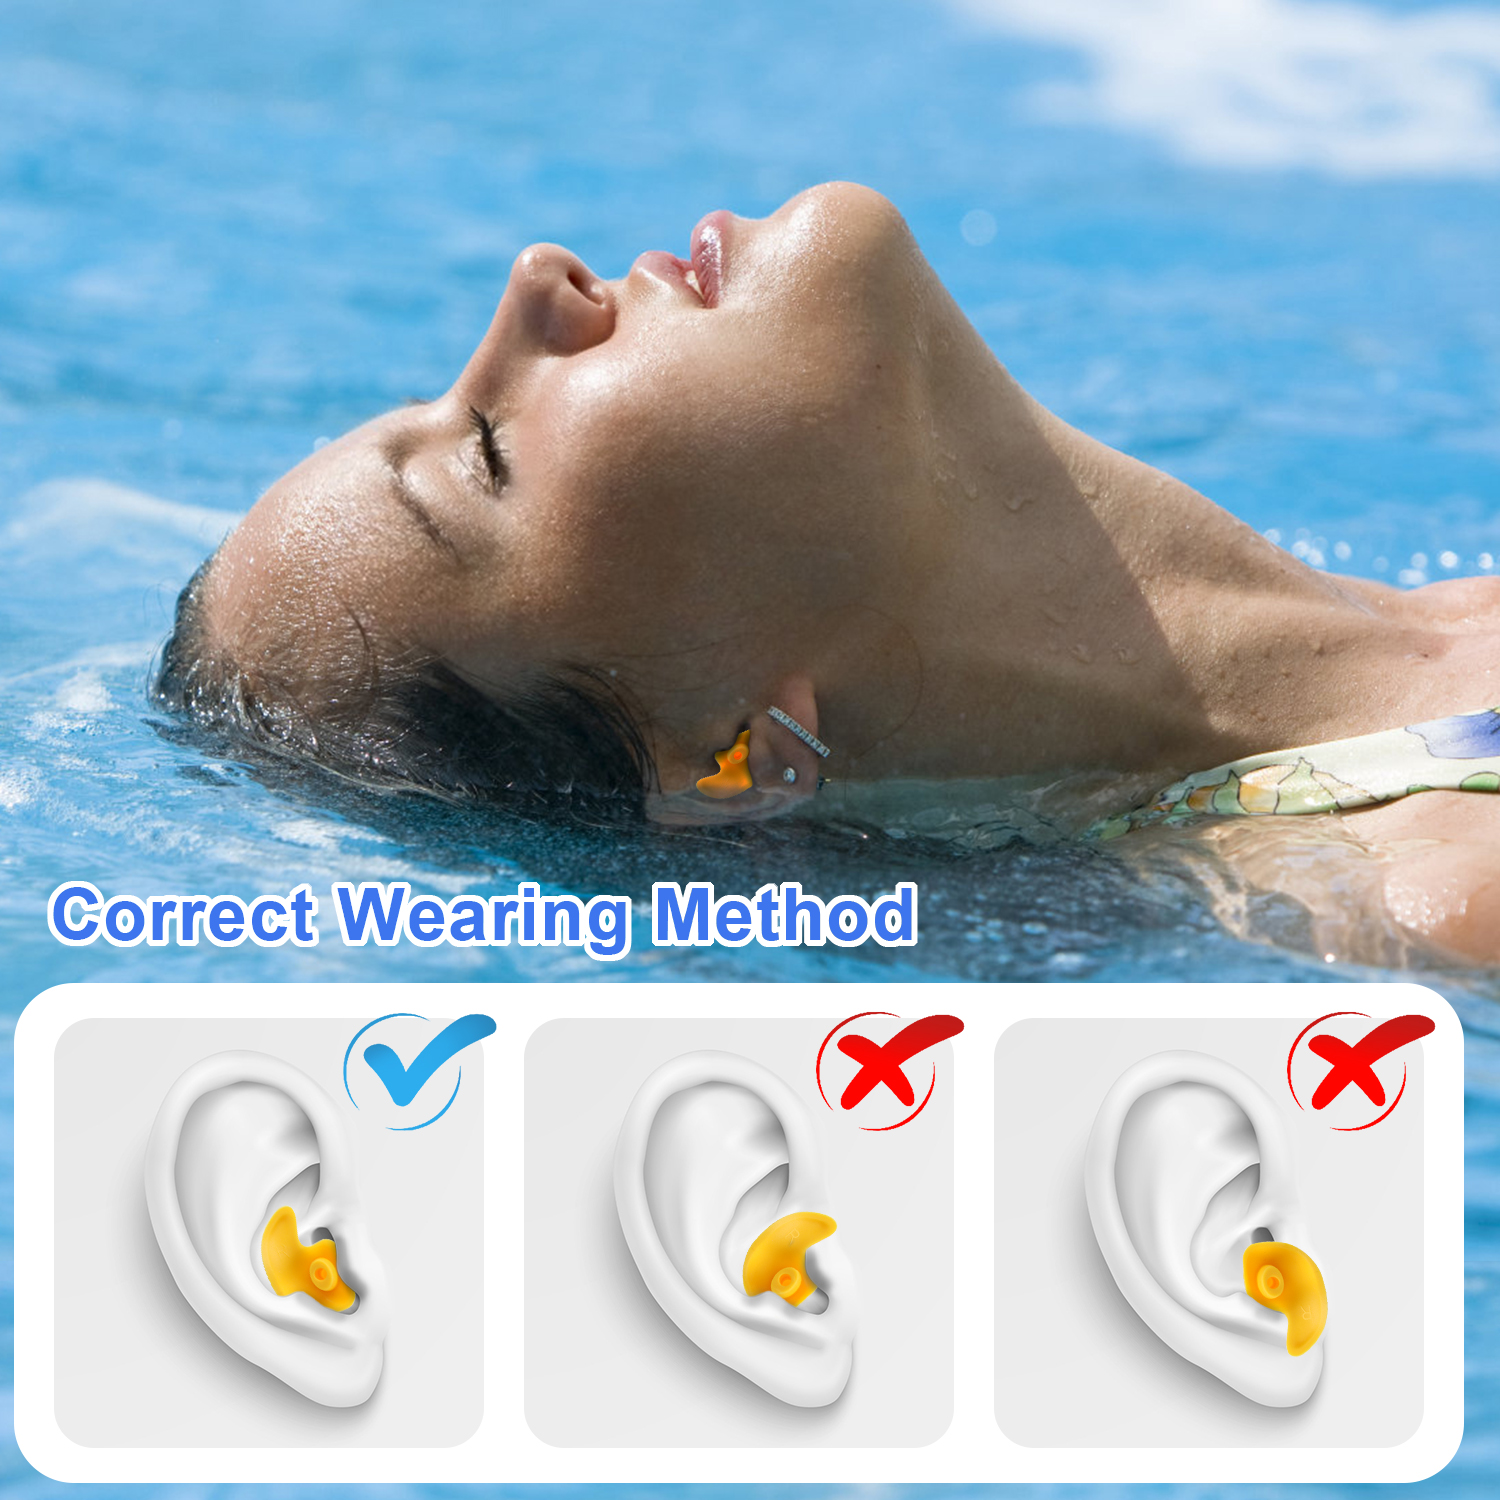 ▷ Tapones de Oído para los niños en natación